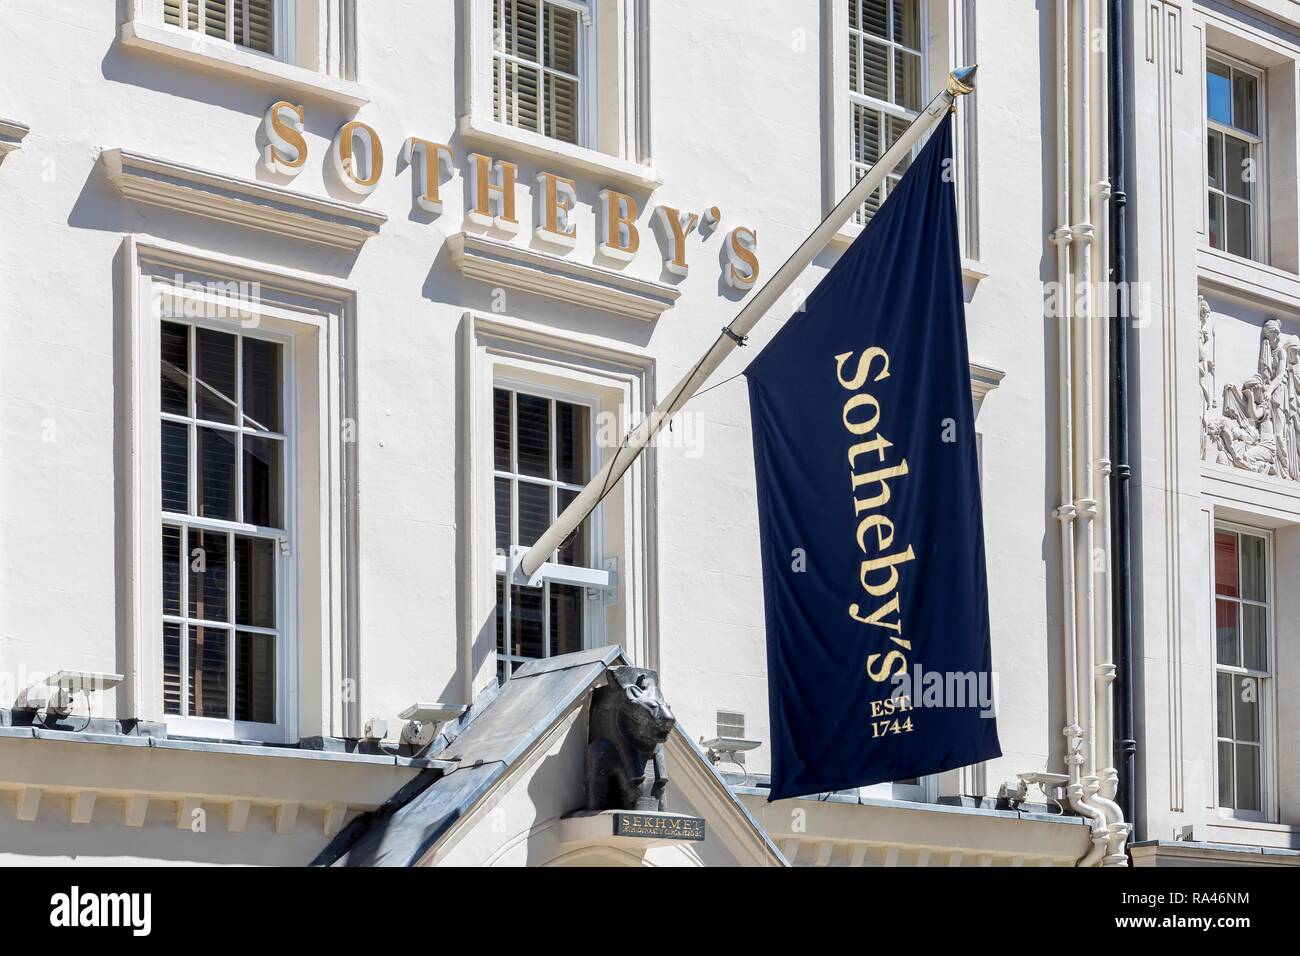 Sotheby's Auction House, Londres, Reino Unido. Foto de stock